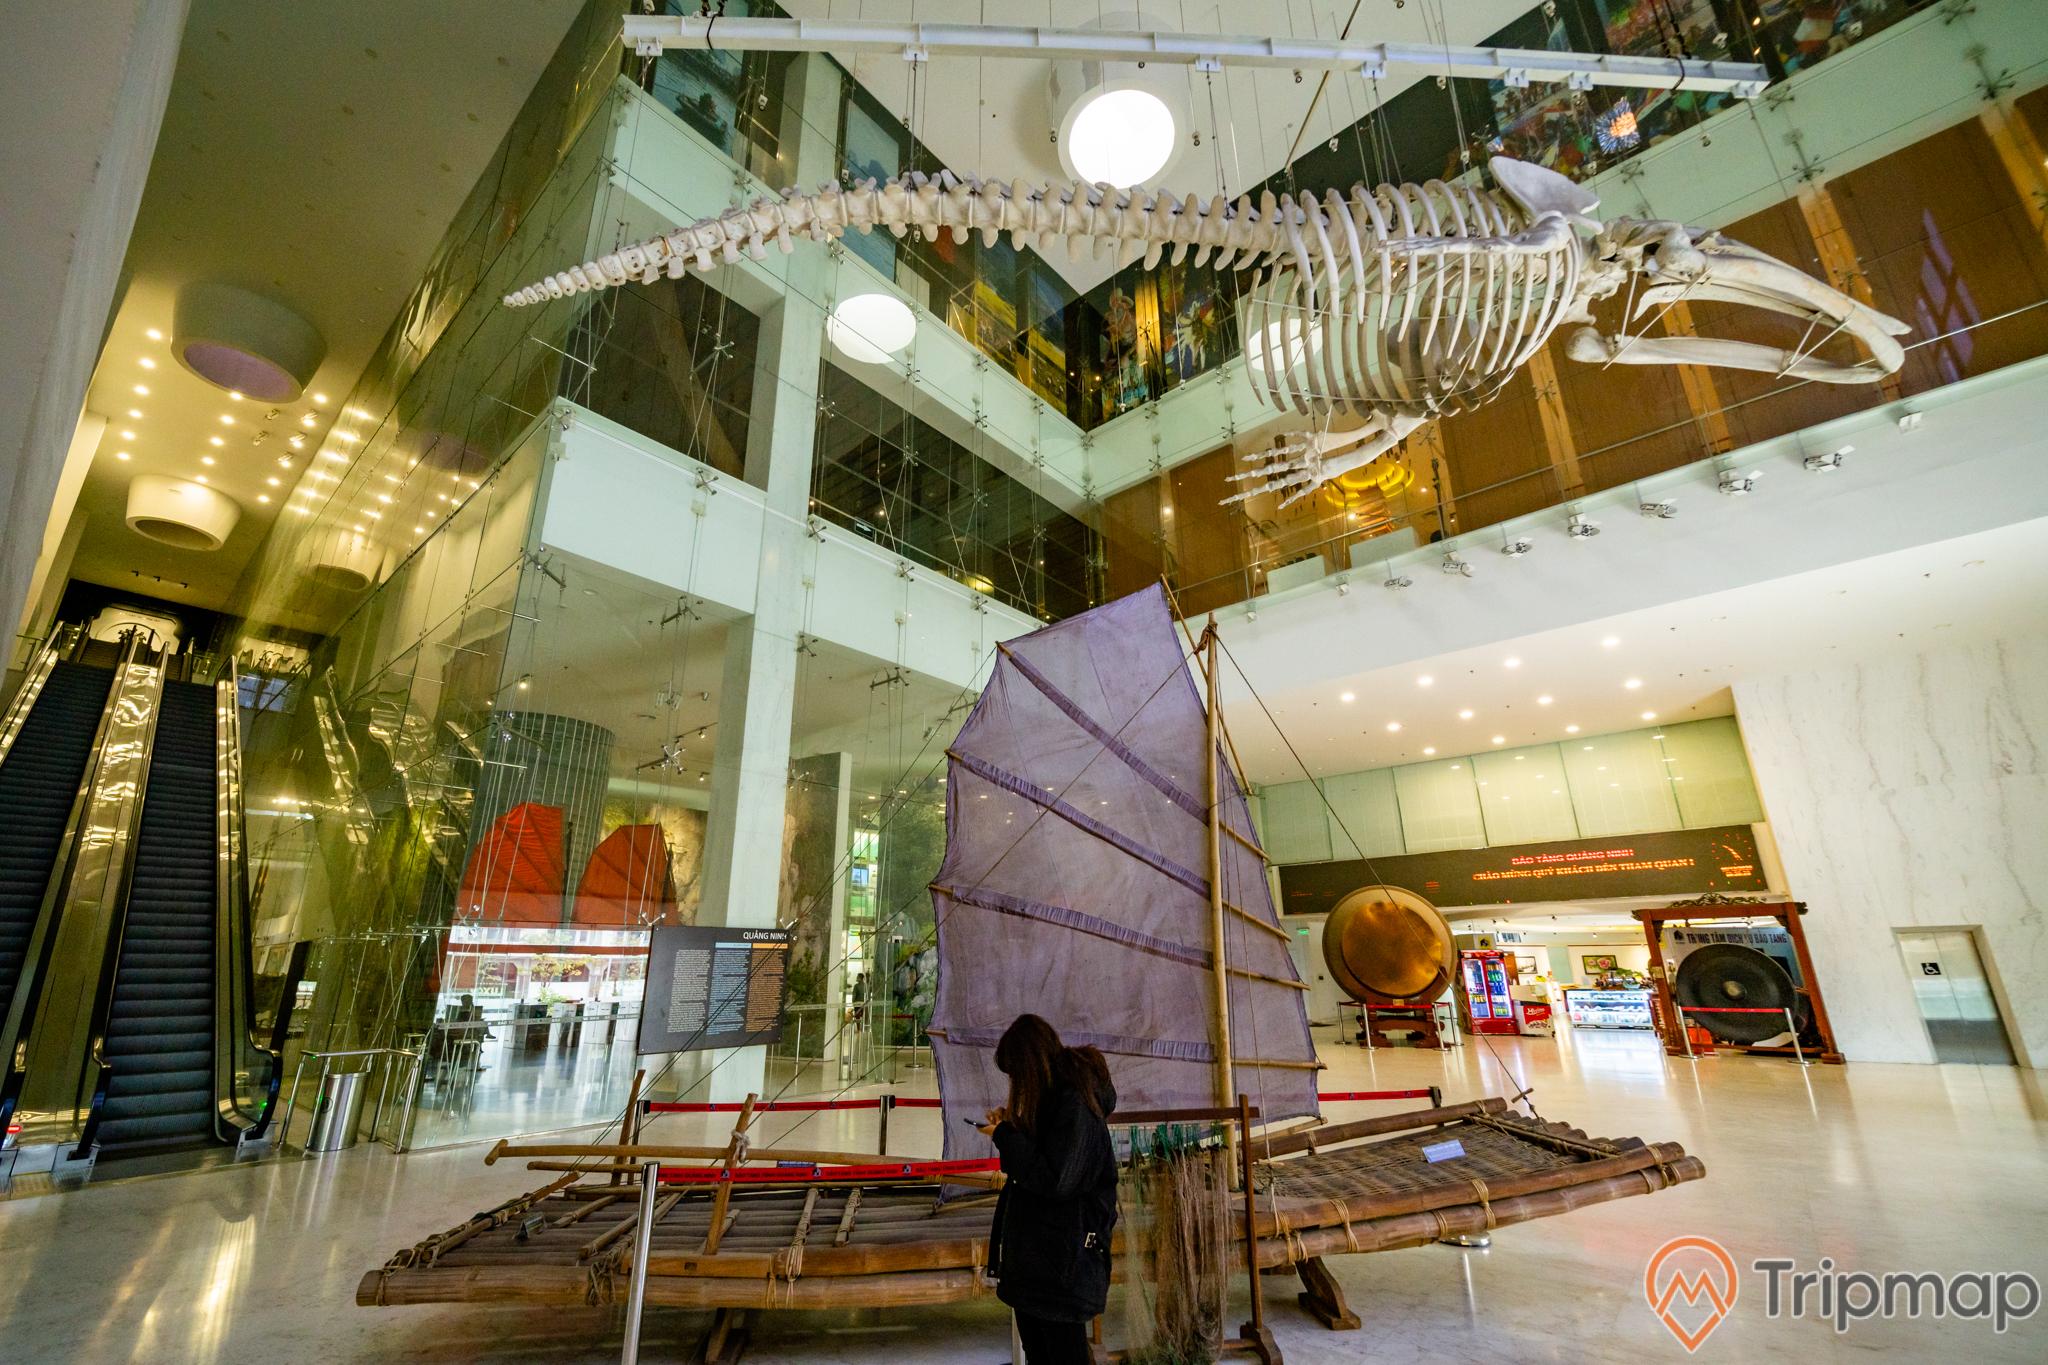 Bảo tàng Quảng Ninh, biển cả và tự nhiên, xương cá voi, mô hình thuyền buồm, thang máy, nền nhà bằng gạch màu nâu, nhà kính, ảnh chụp ban ngày